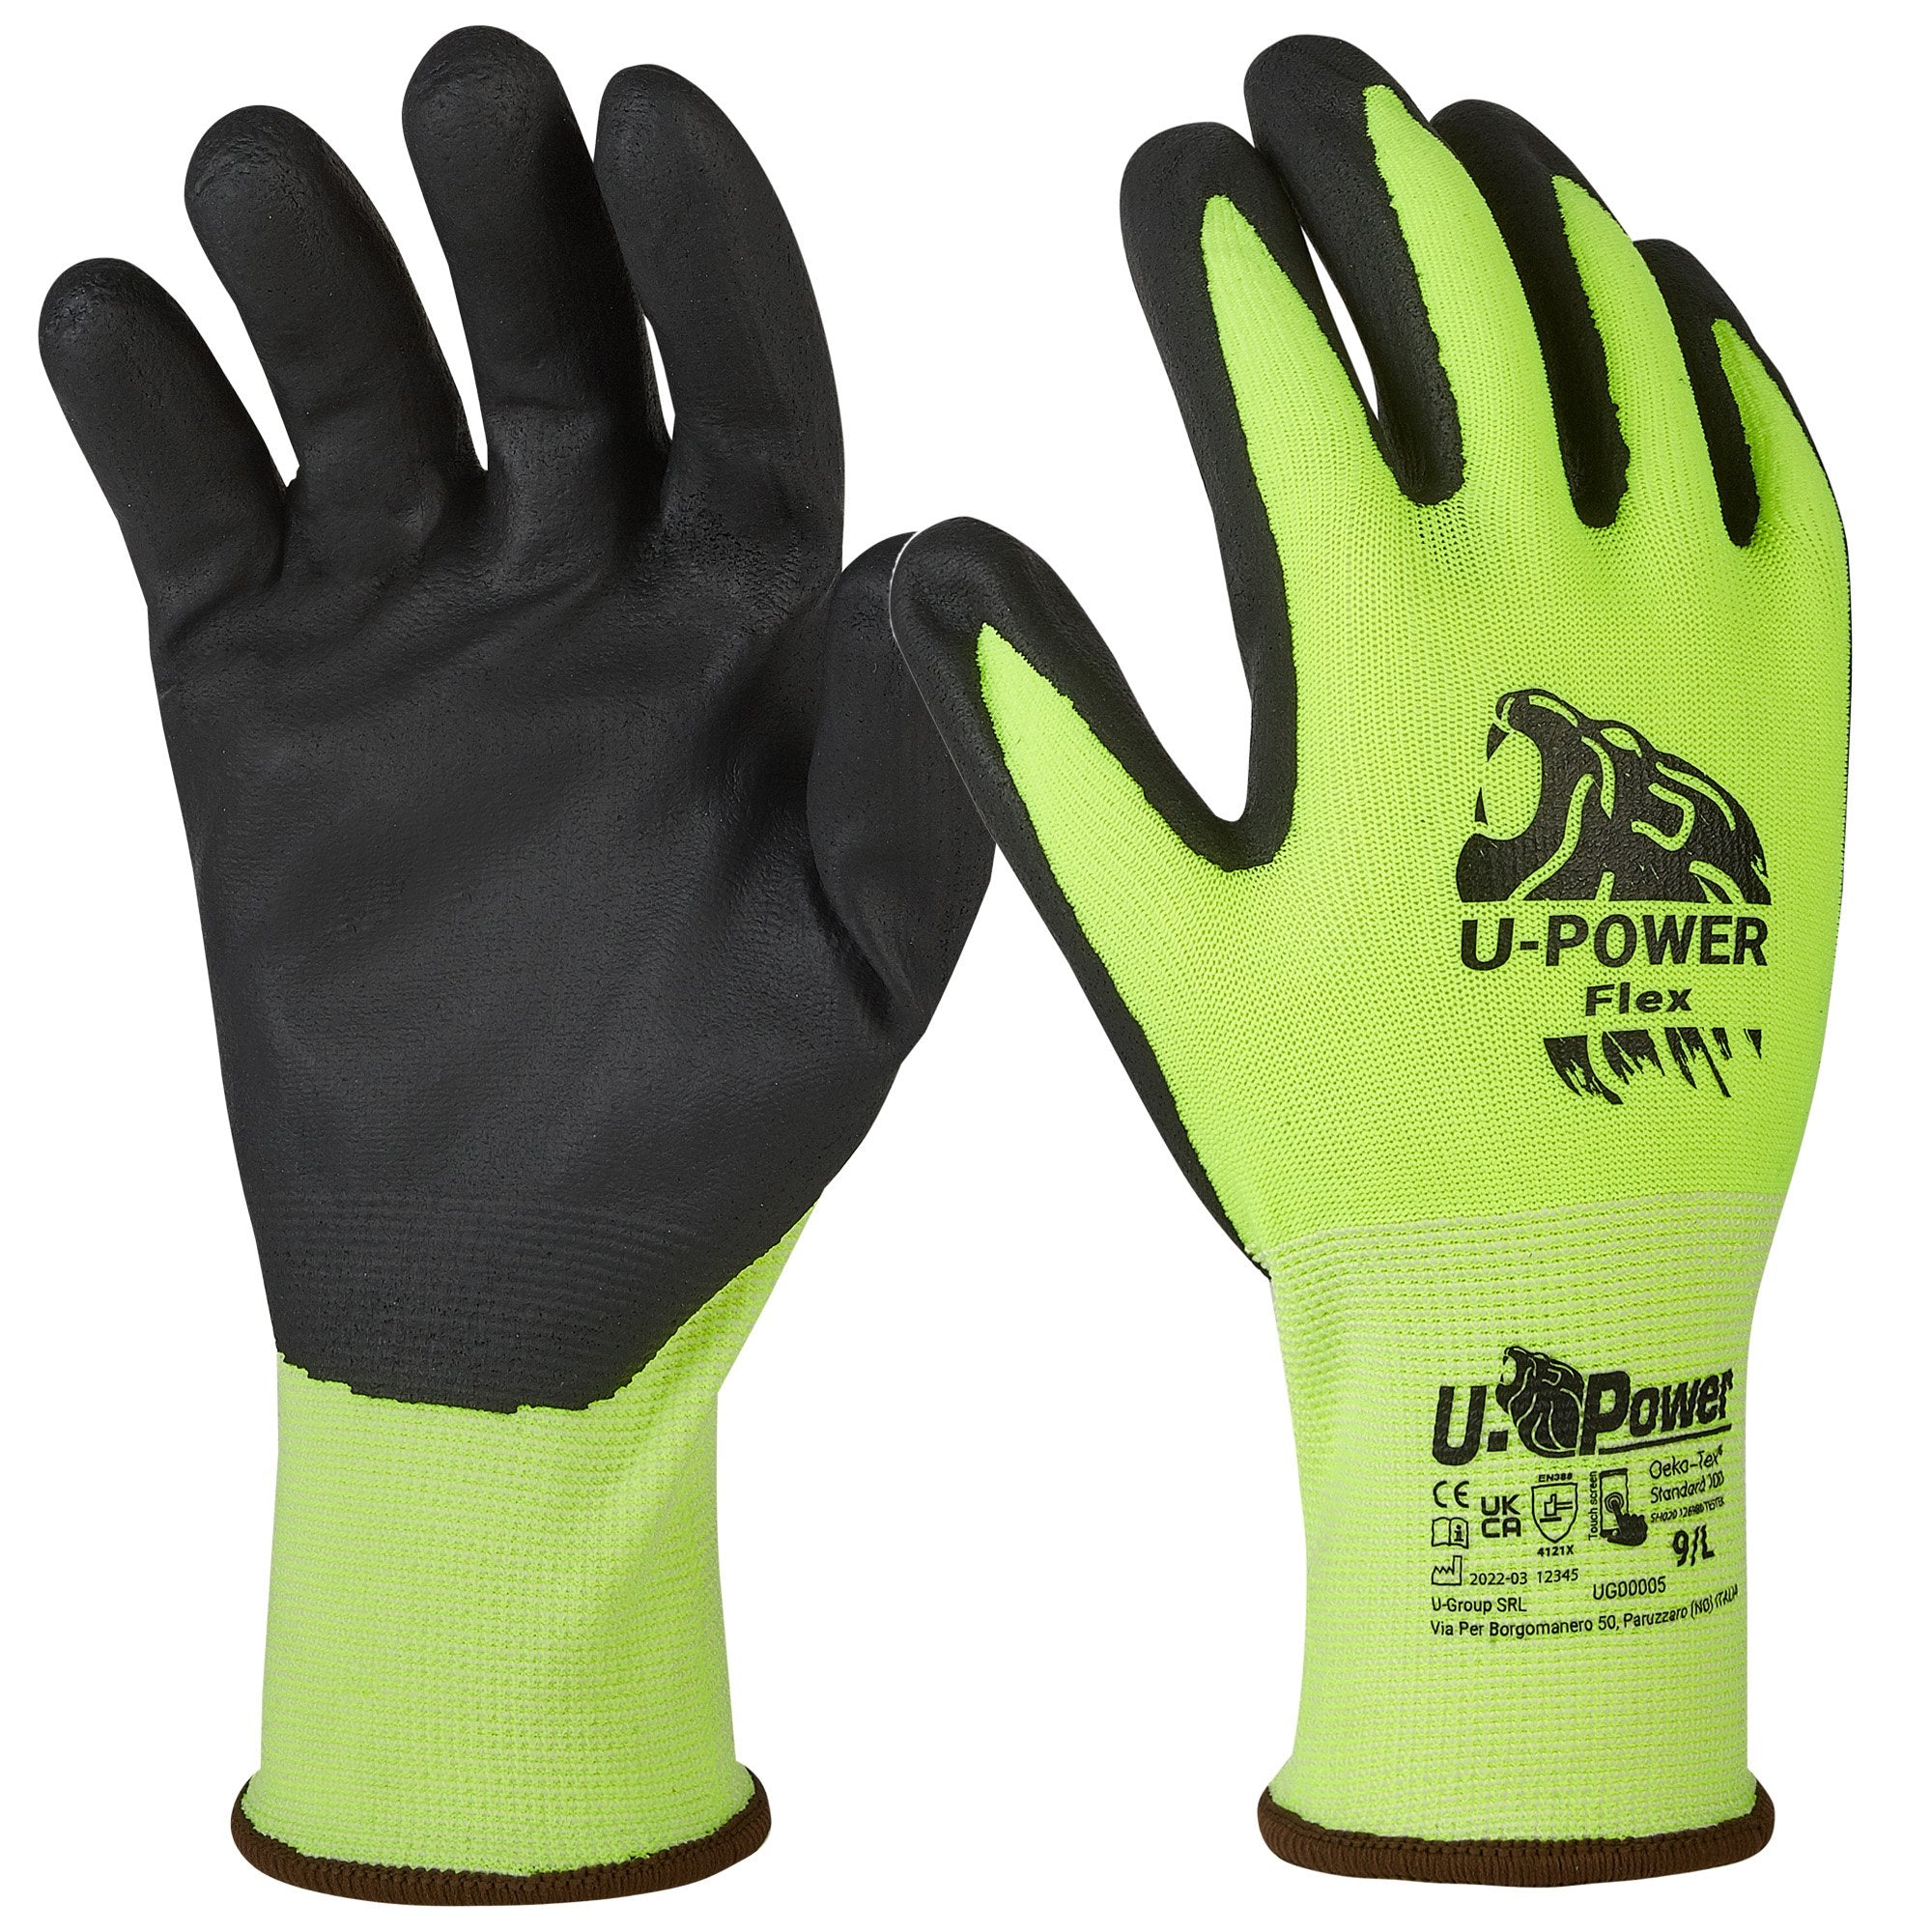 u-power-guanti-protezione-flex-taglia-08-verde-fluo-nero-c-polsino-giallo